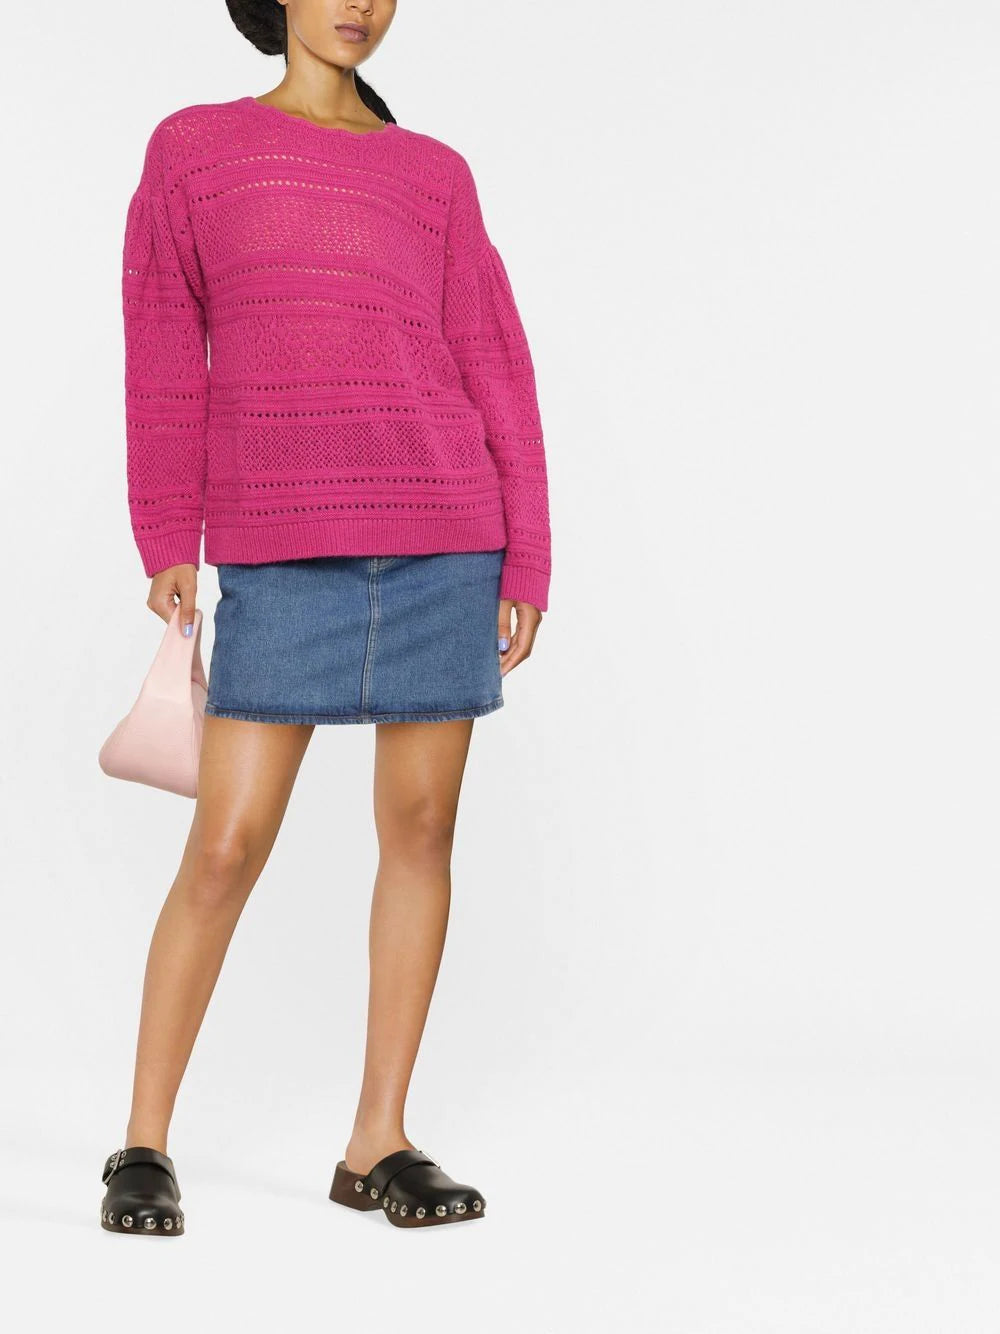 TWINSET open-knit jumper